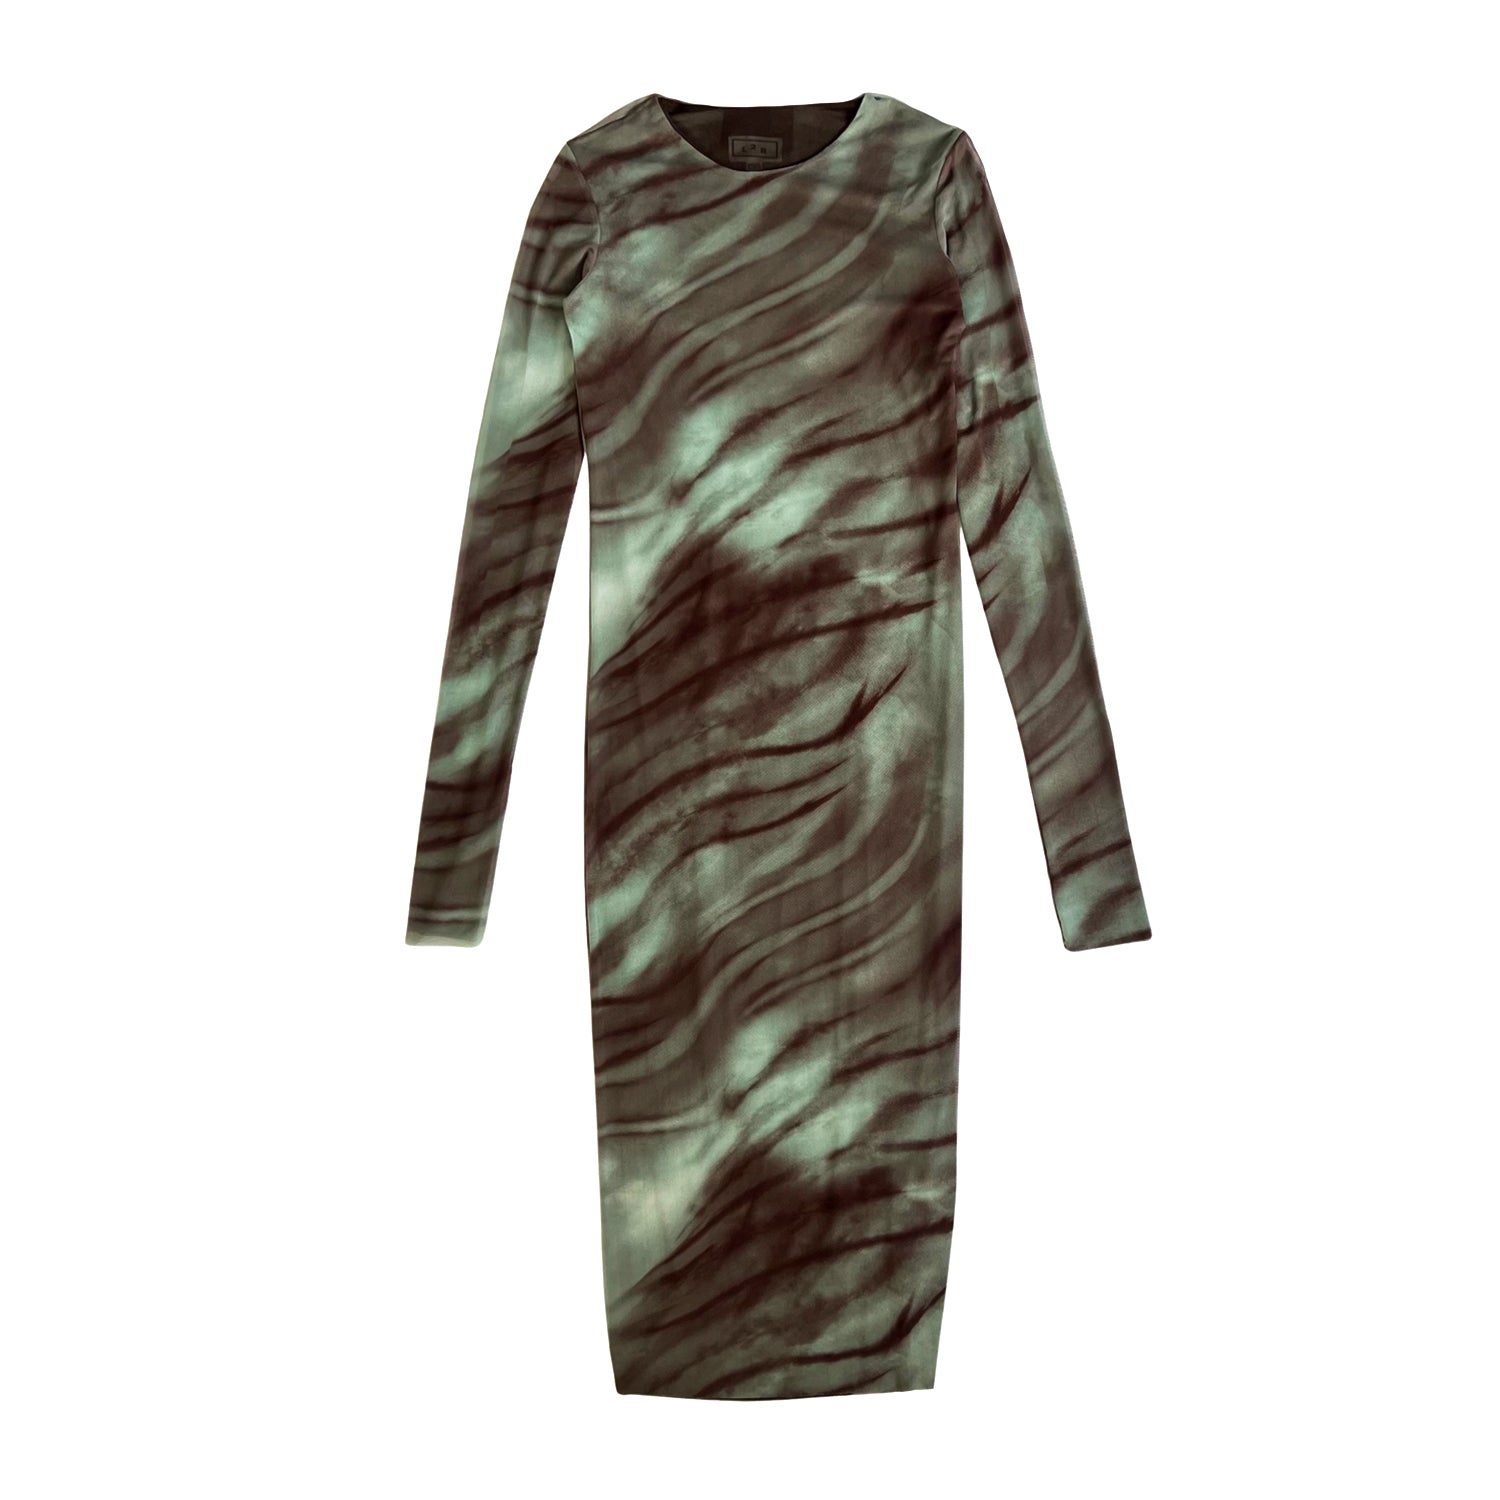 Reversible Print Mesh Dress in Brown & Green